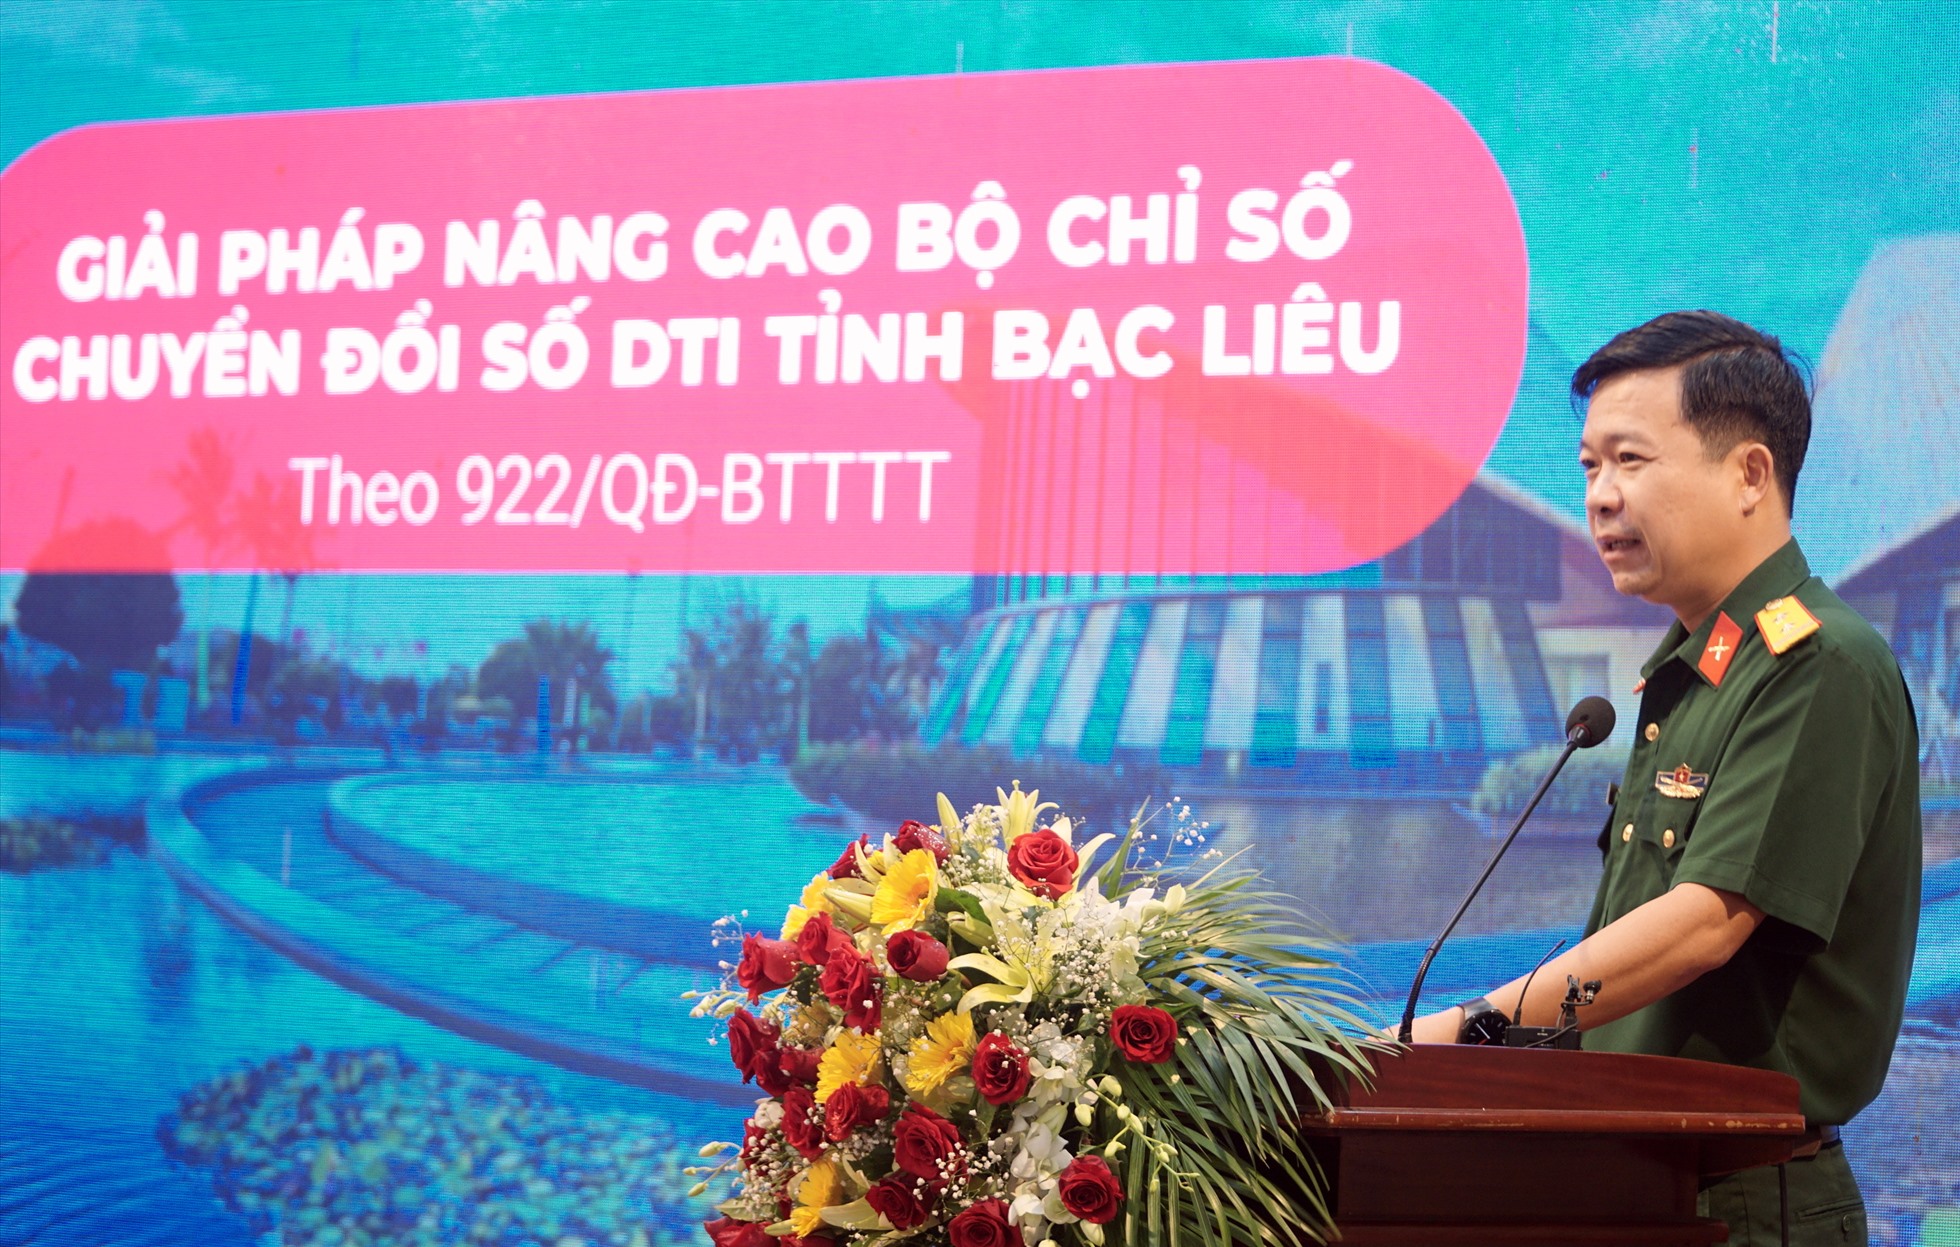 Hội thảo bàn giải pháp chuyển đổi số tỉnh Bạc Liêu năm 2022. Ảnh: Nhật Hồ